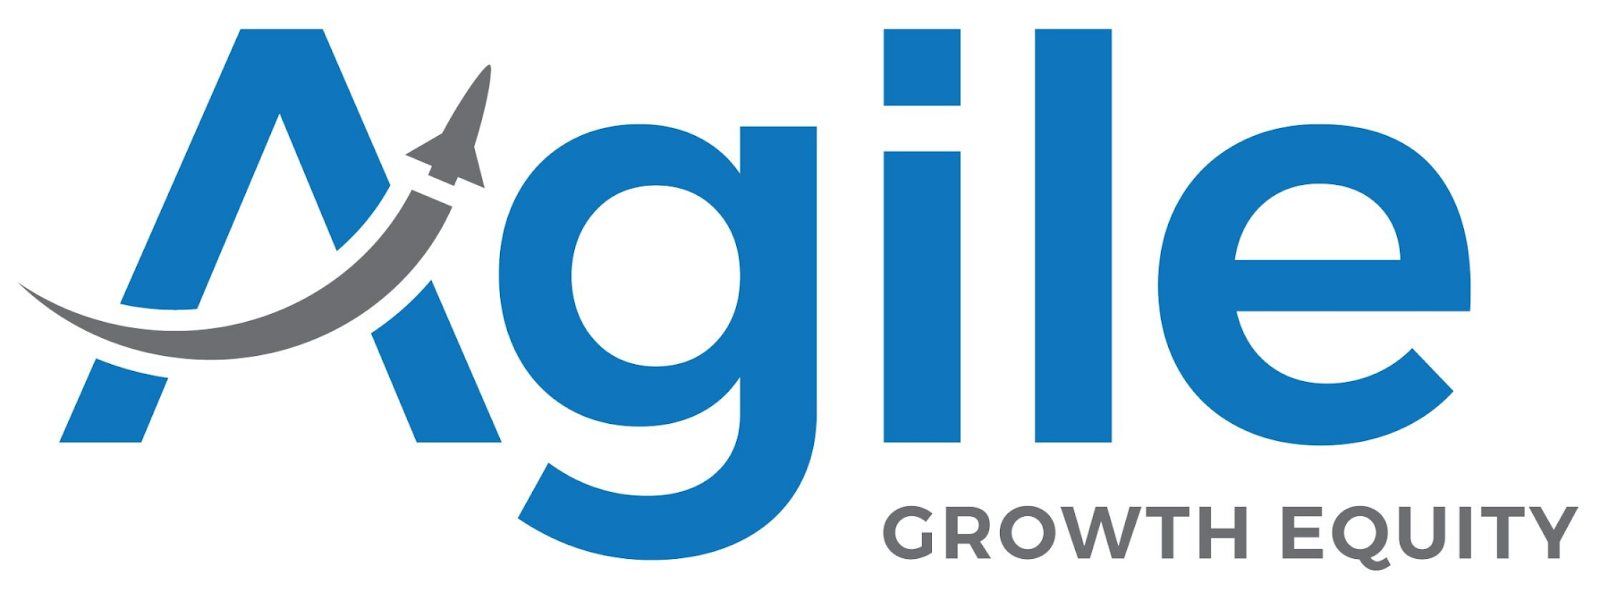 Agile Growth Equity logo